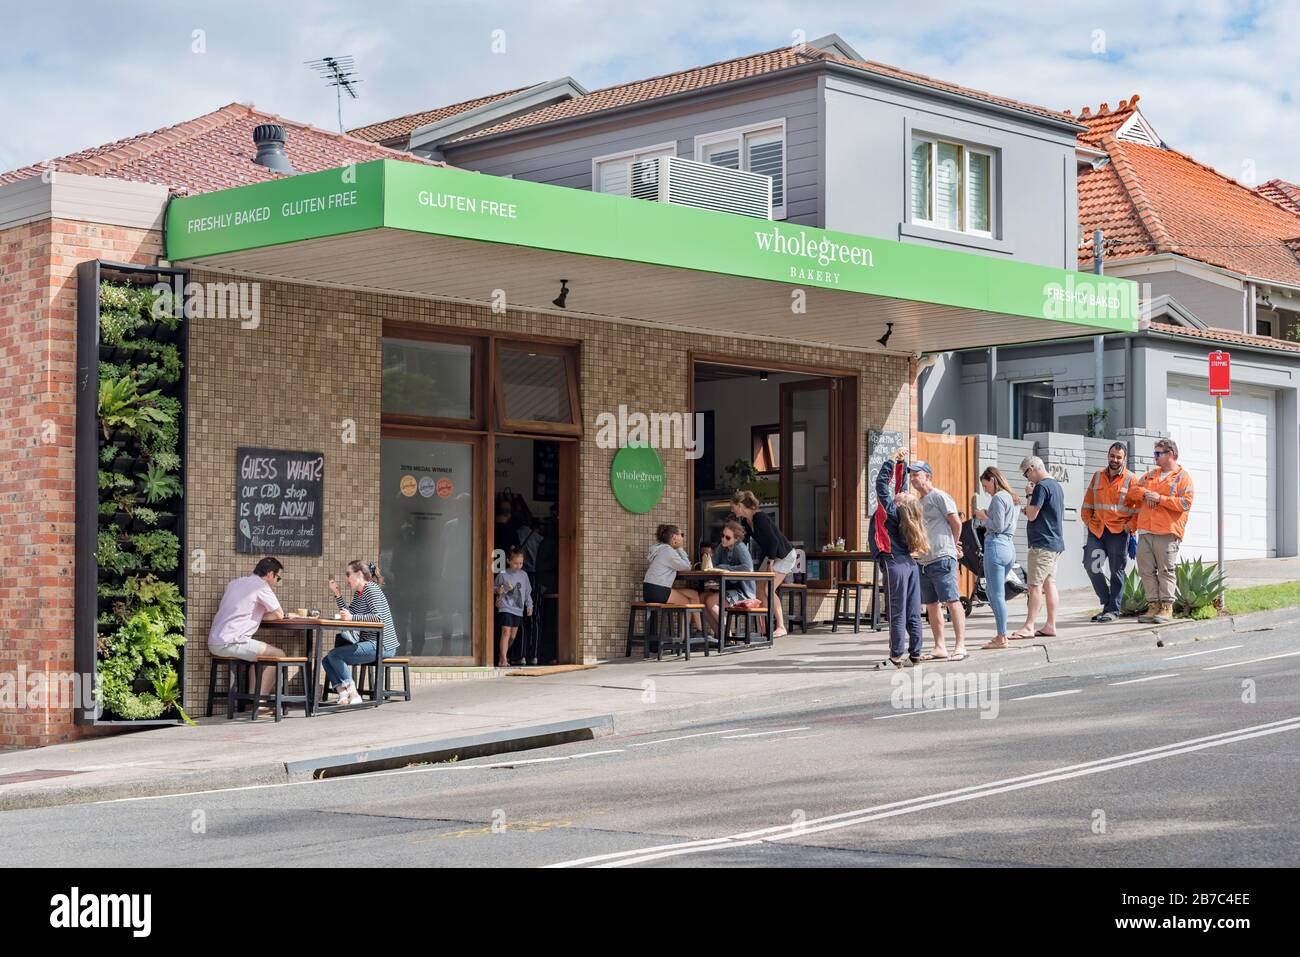 Die Leute warten und essen außerhalb der Wholegreen Bakery in Sydney, Australien, Vorort von Waverly. Wholegreen ist ein völlig glutenfreier Bäcker und Lieferant. Stockfoto